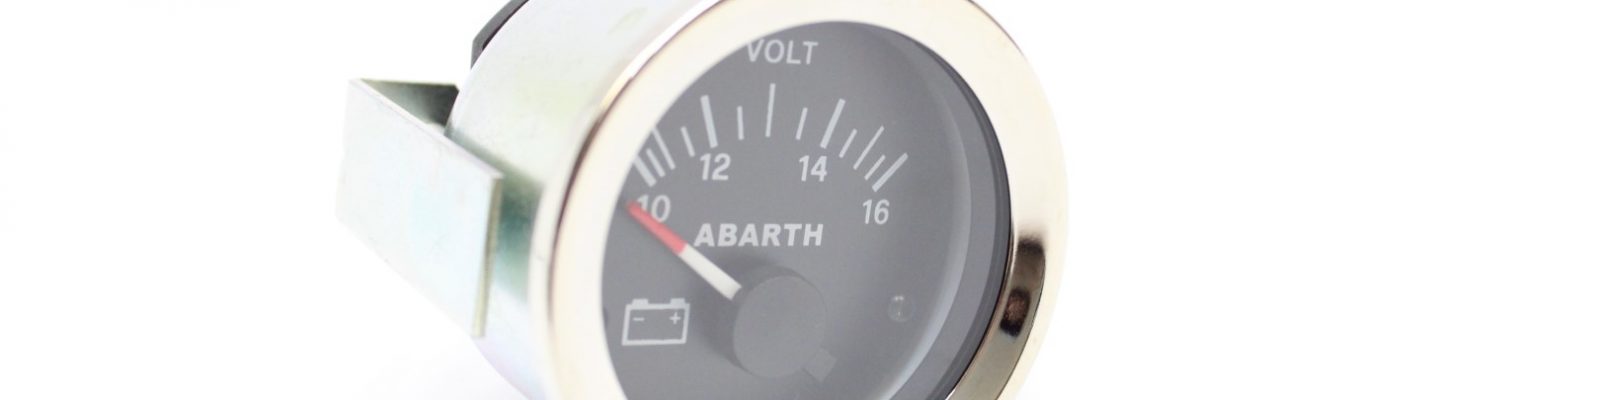 Fiat Abarth 124 127 128 A112 engine voltage gauge 52mm